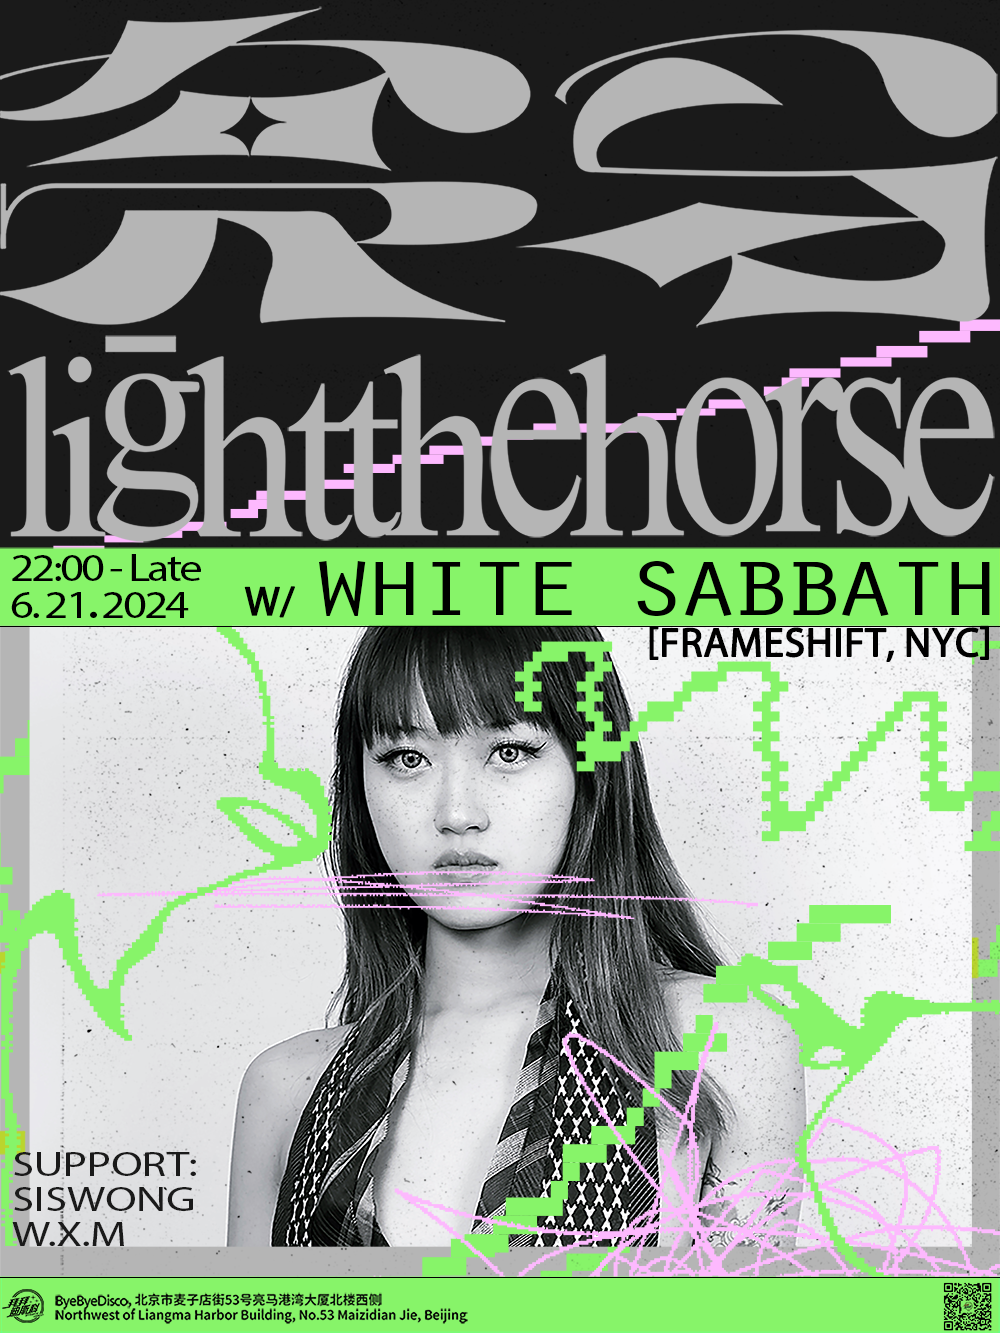 亮马/Light The Horse with White Sabbath (Frameshift, NYC) at 